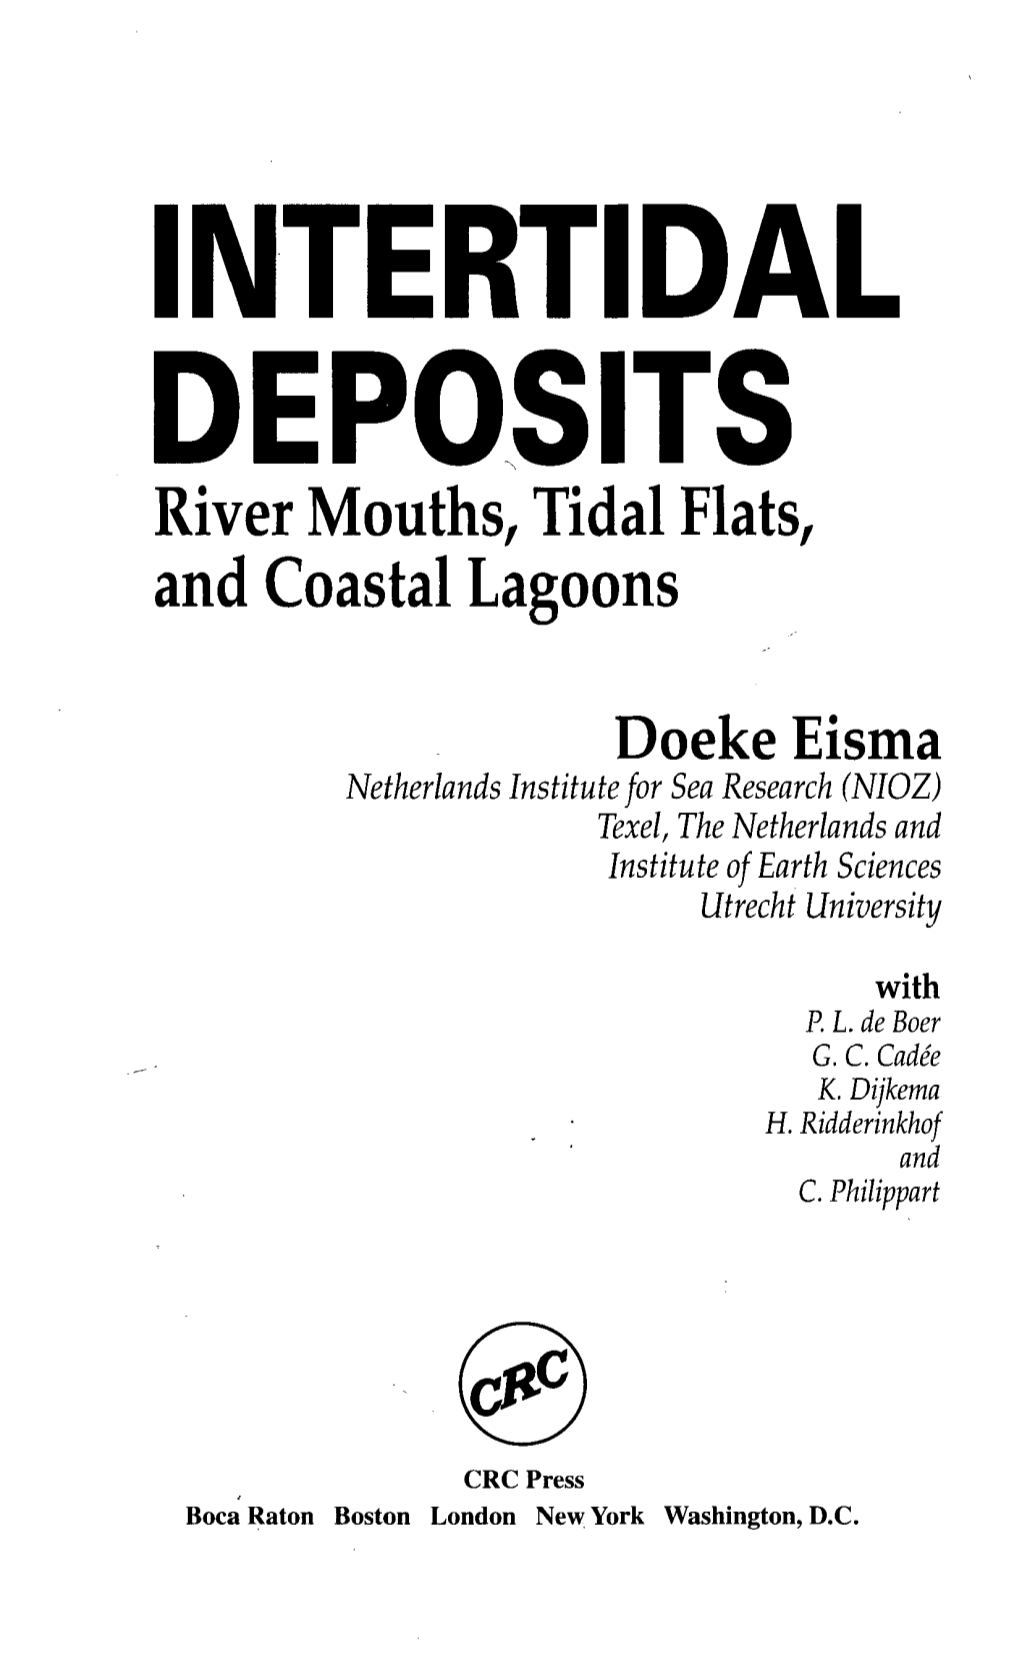 INTERTIDAL DEPOSITS River Mouths, Tidal Flats, and Coastal Lagoons